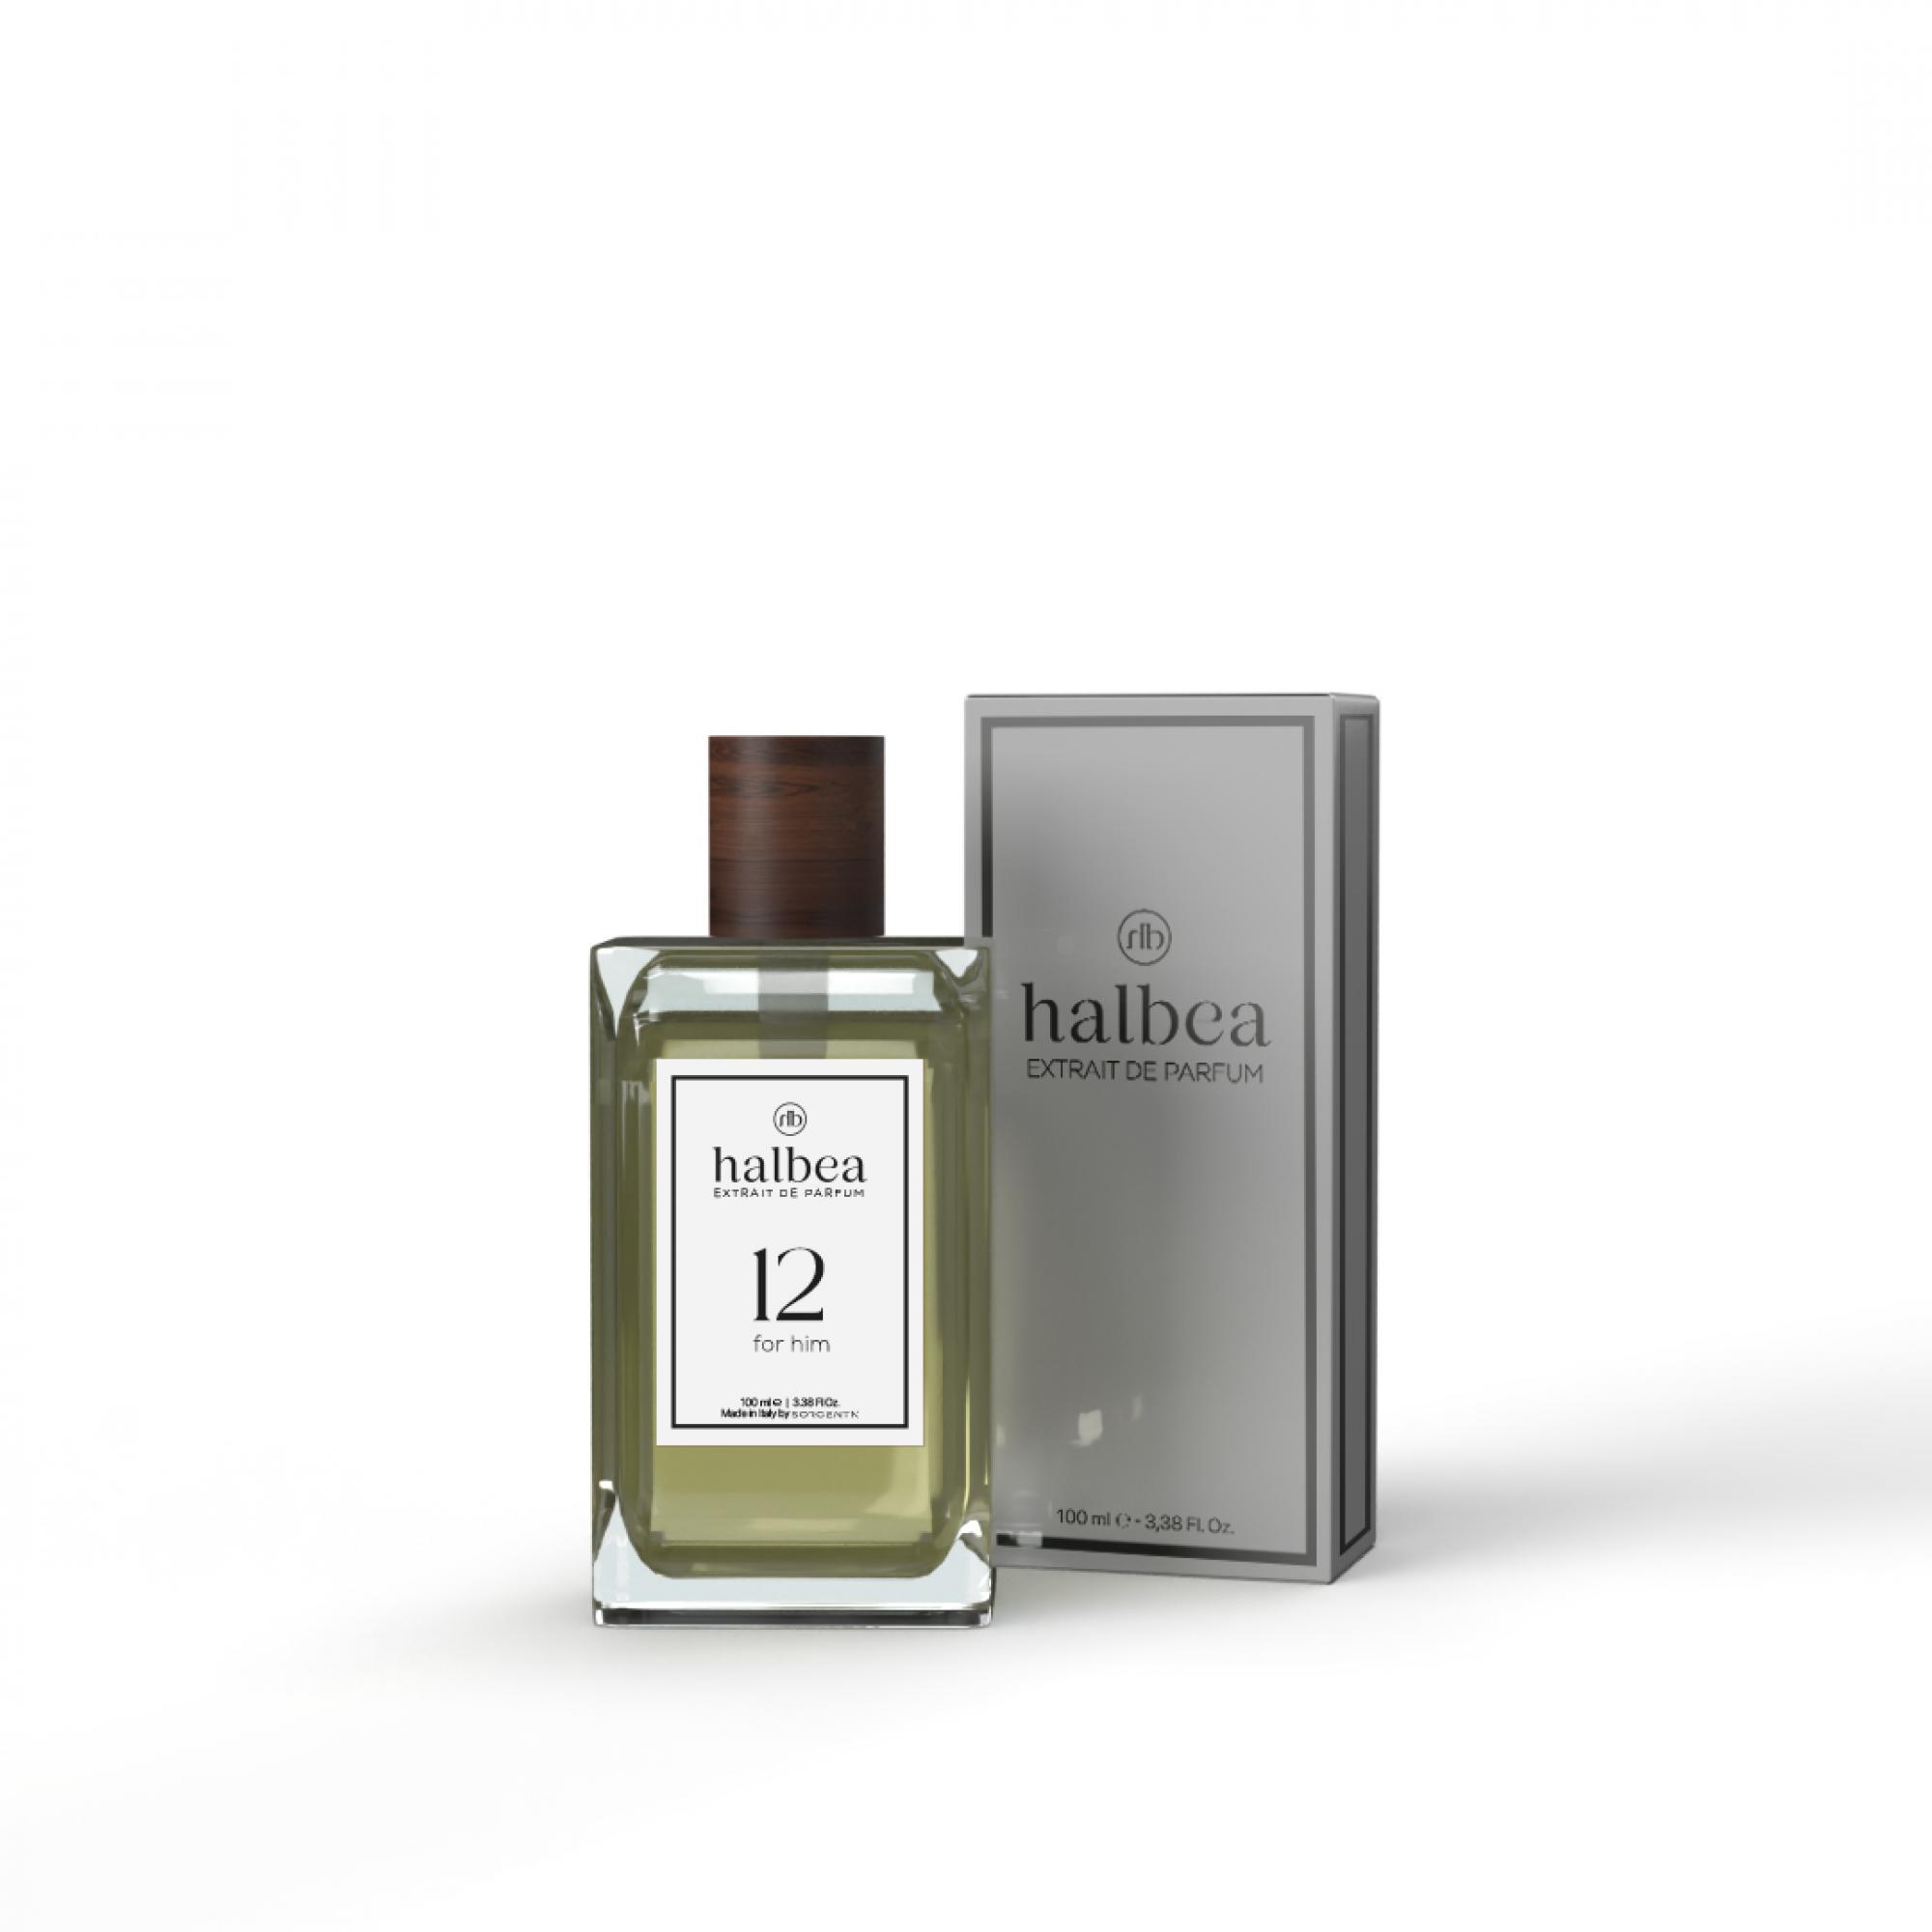 Halbea Parfum Nr. 12 insp. by Dior Fahrenheit Sorgenta Duftzwilling 100ml